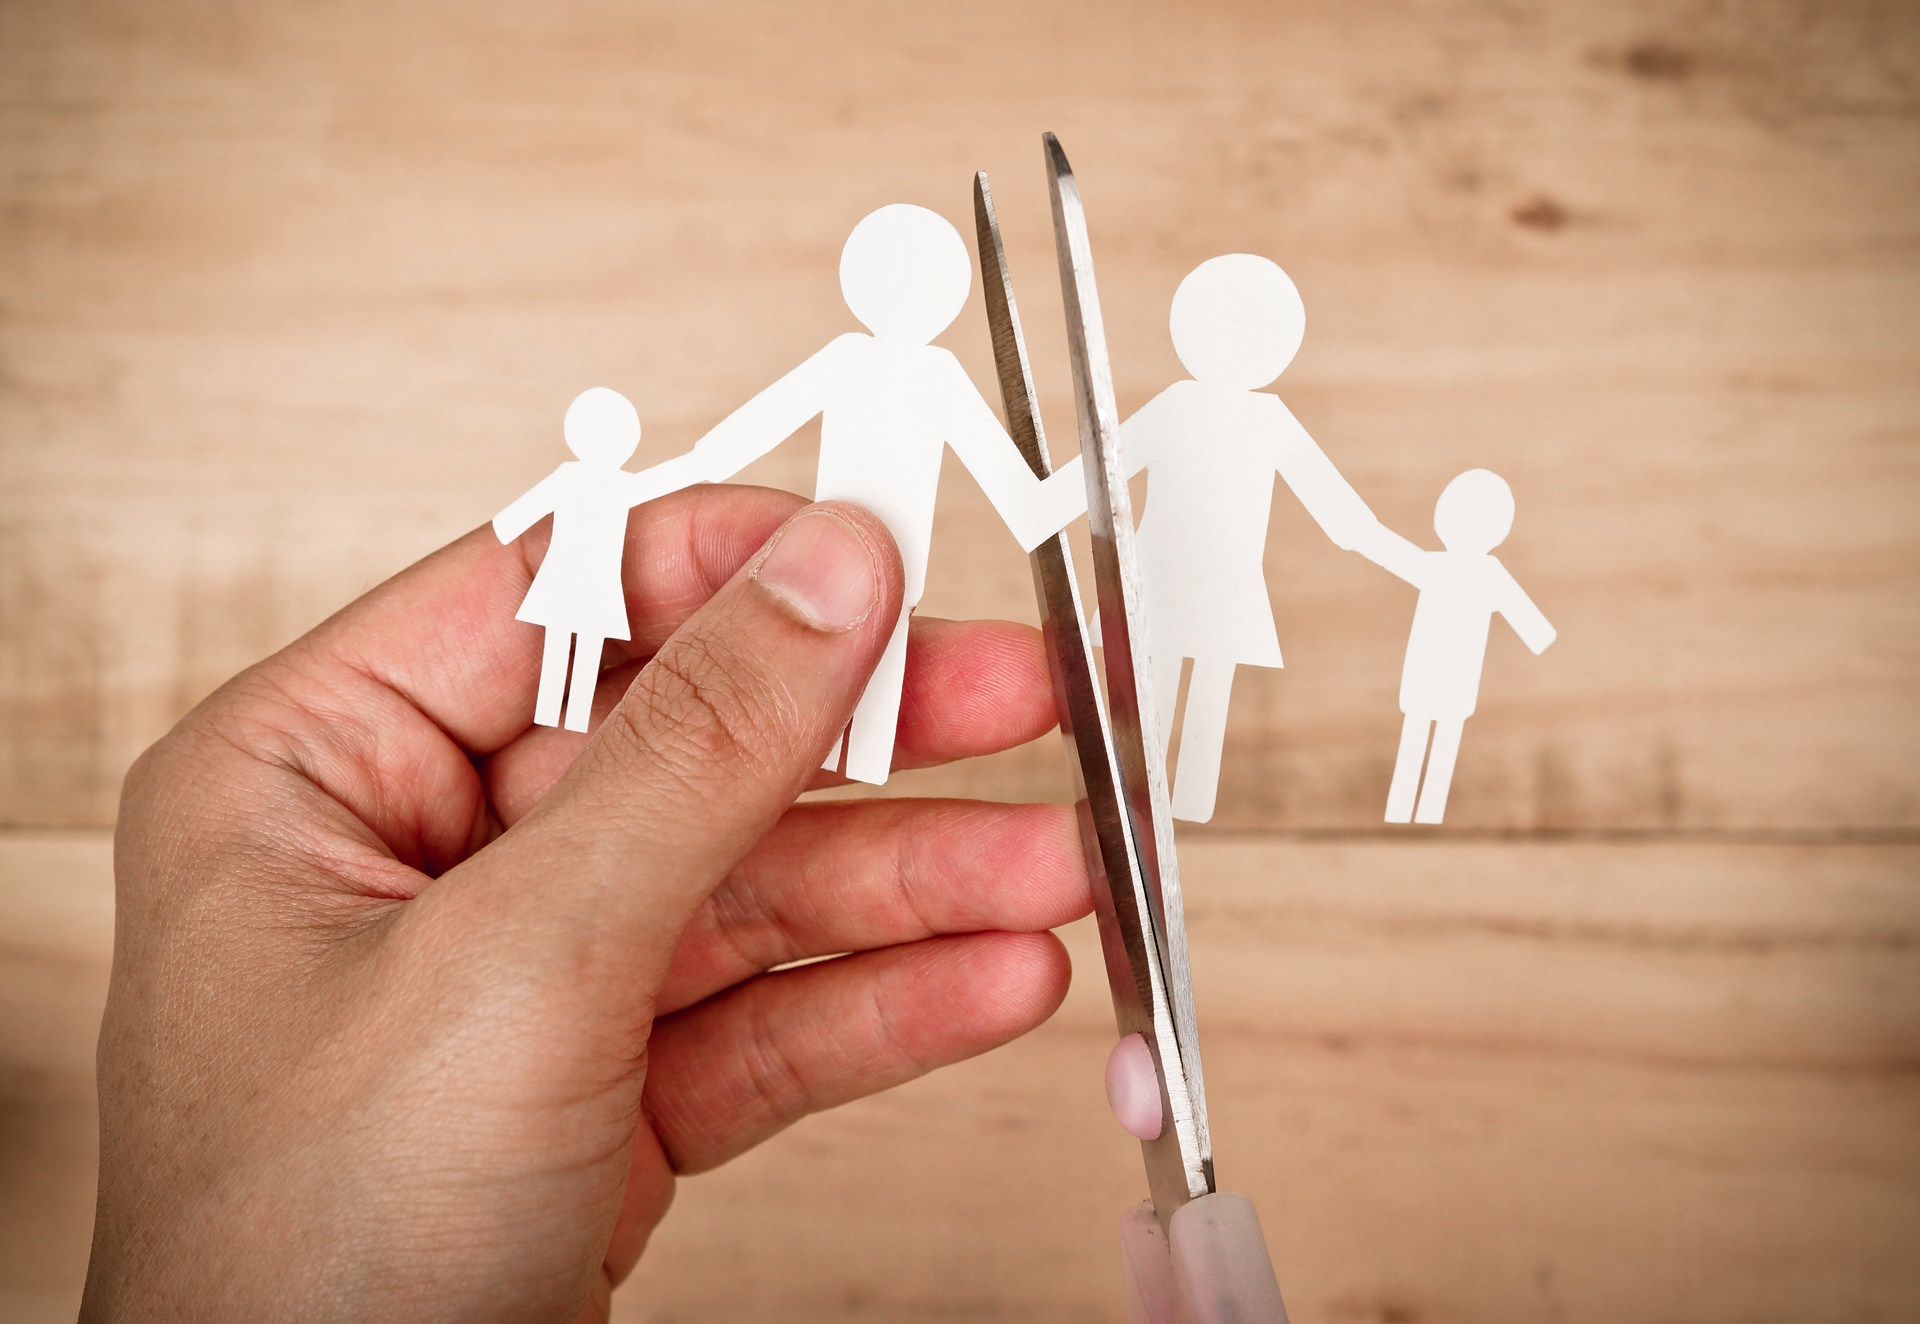 Filhos de pais separados: como a psicologia pode ajudar